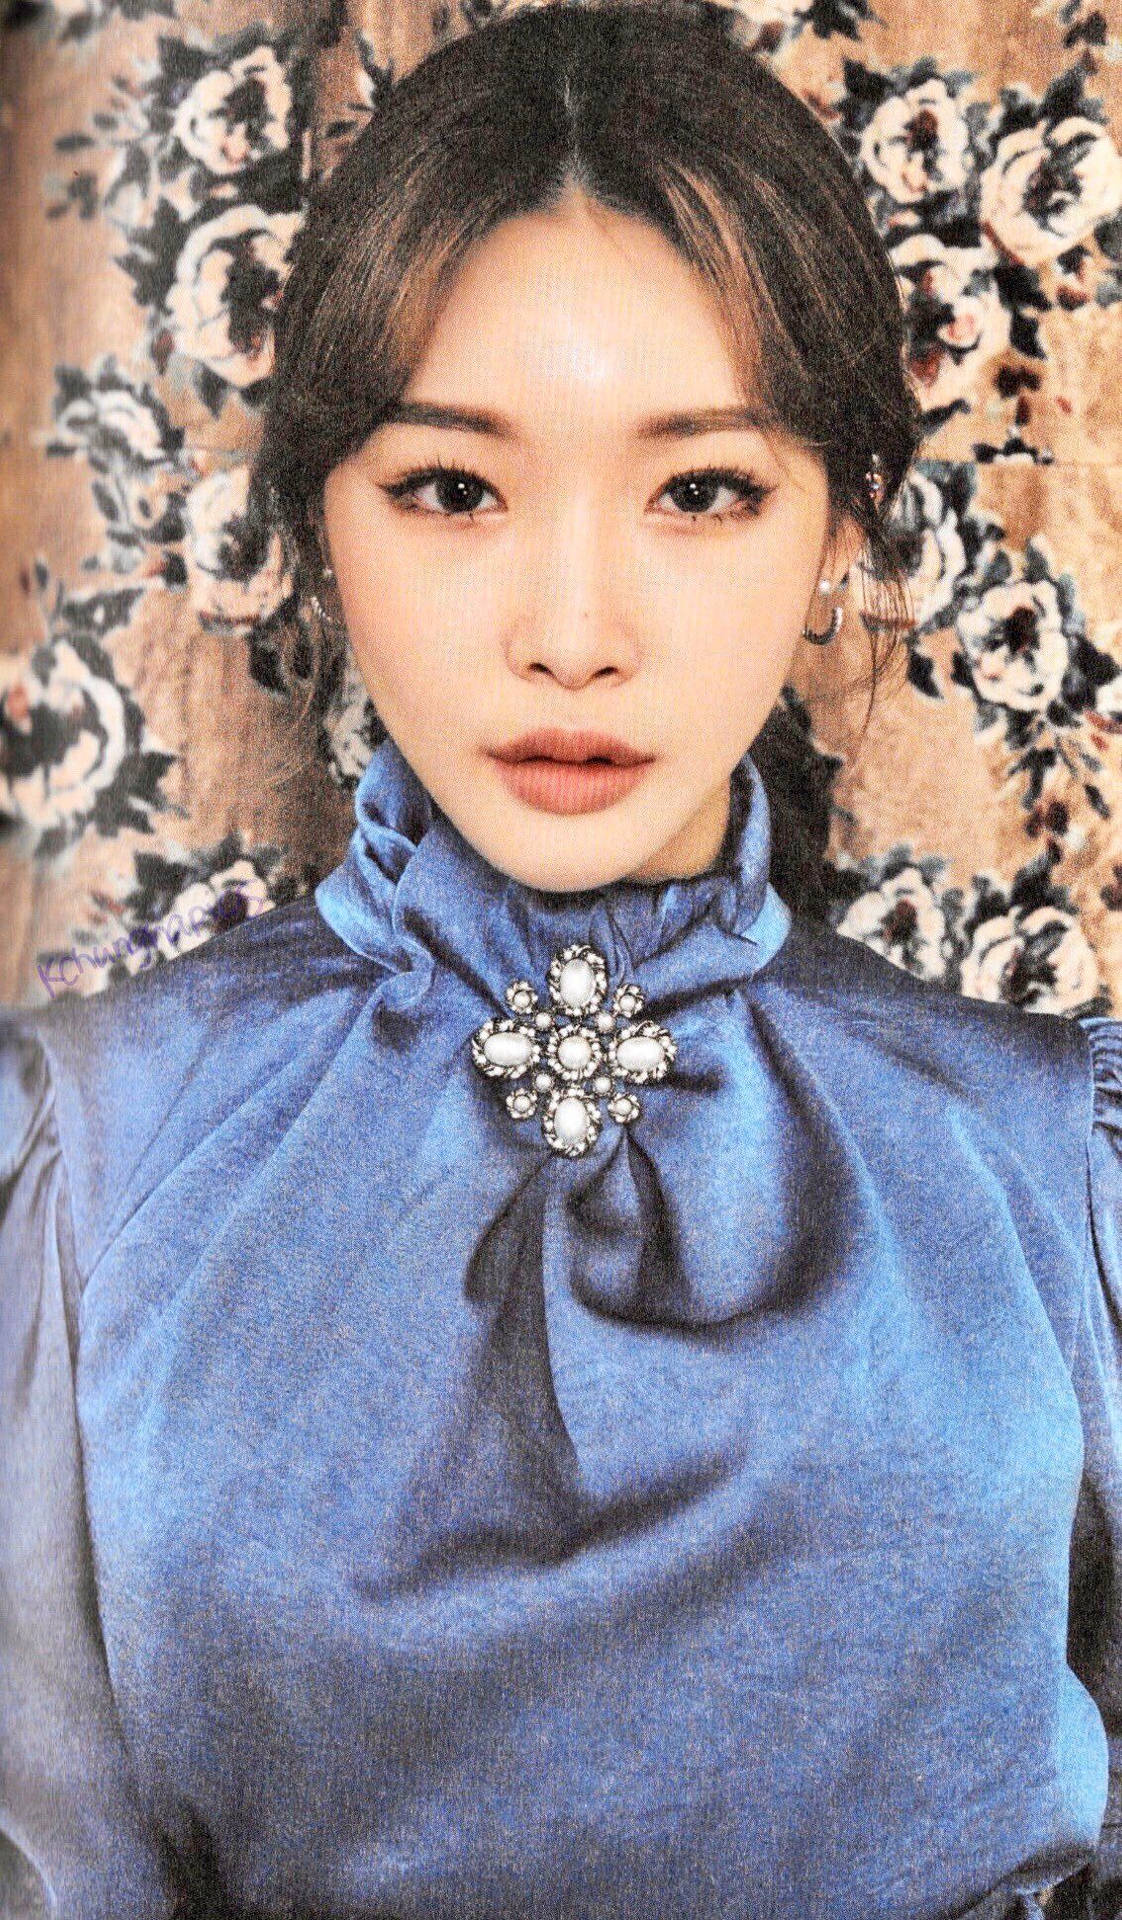 Chungha In Blue Dress Background